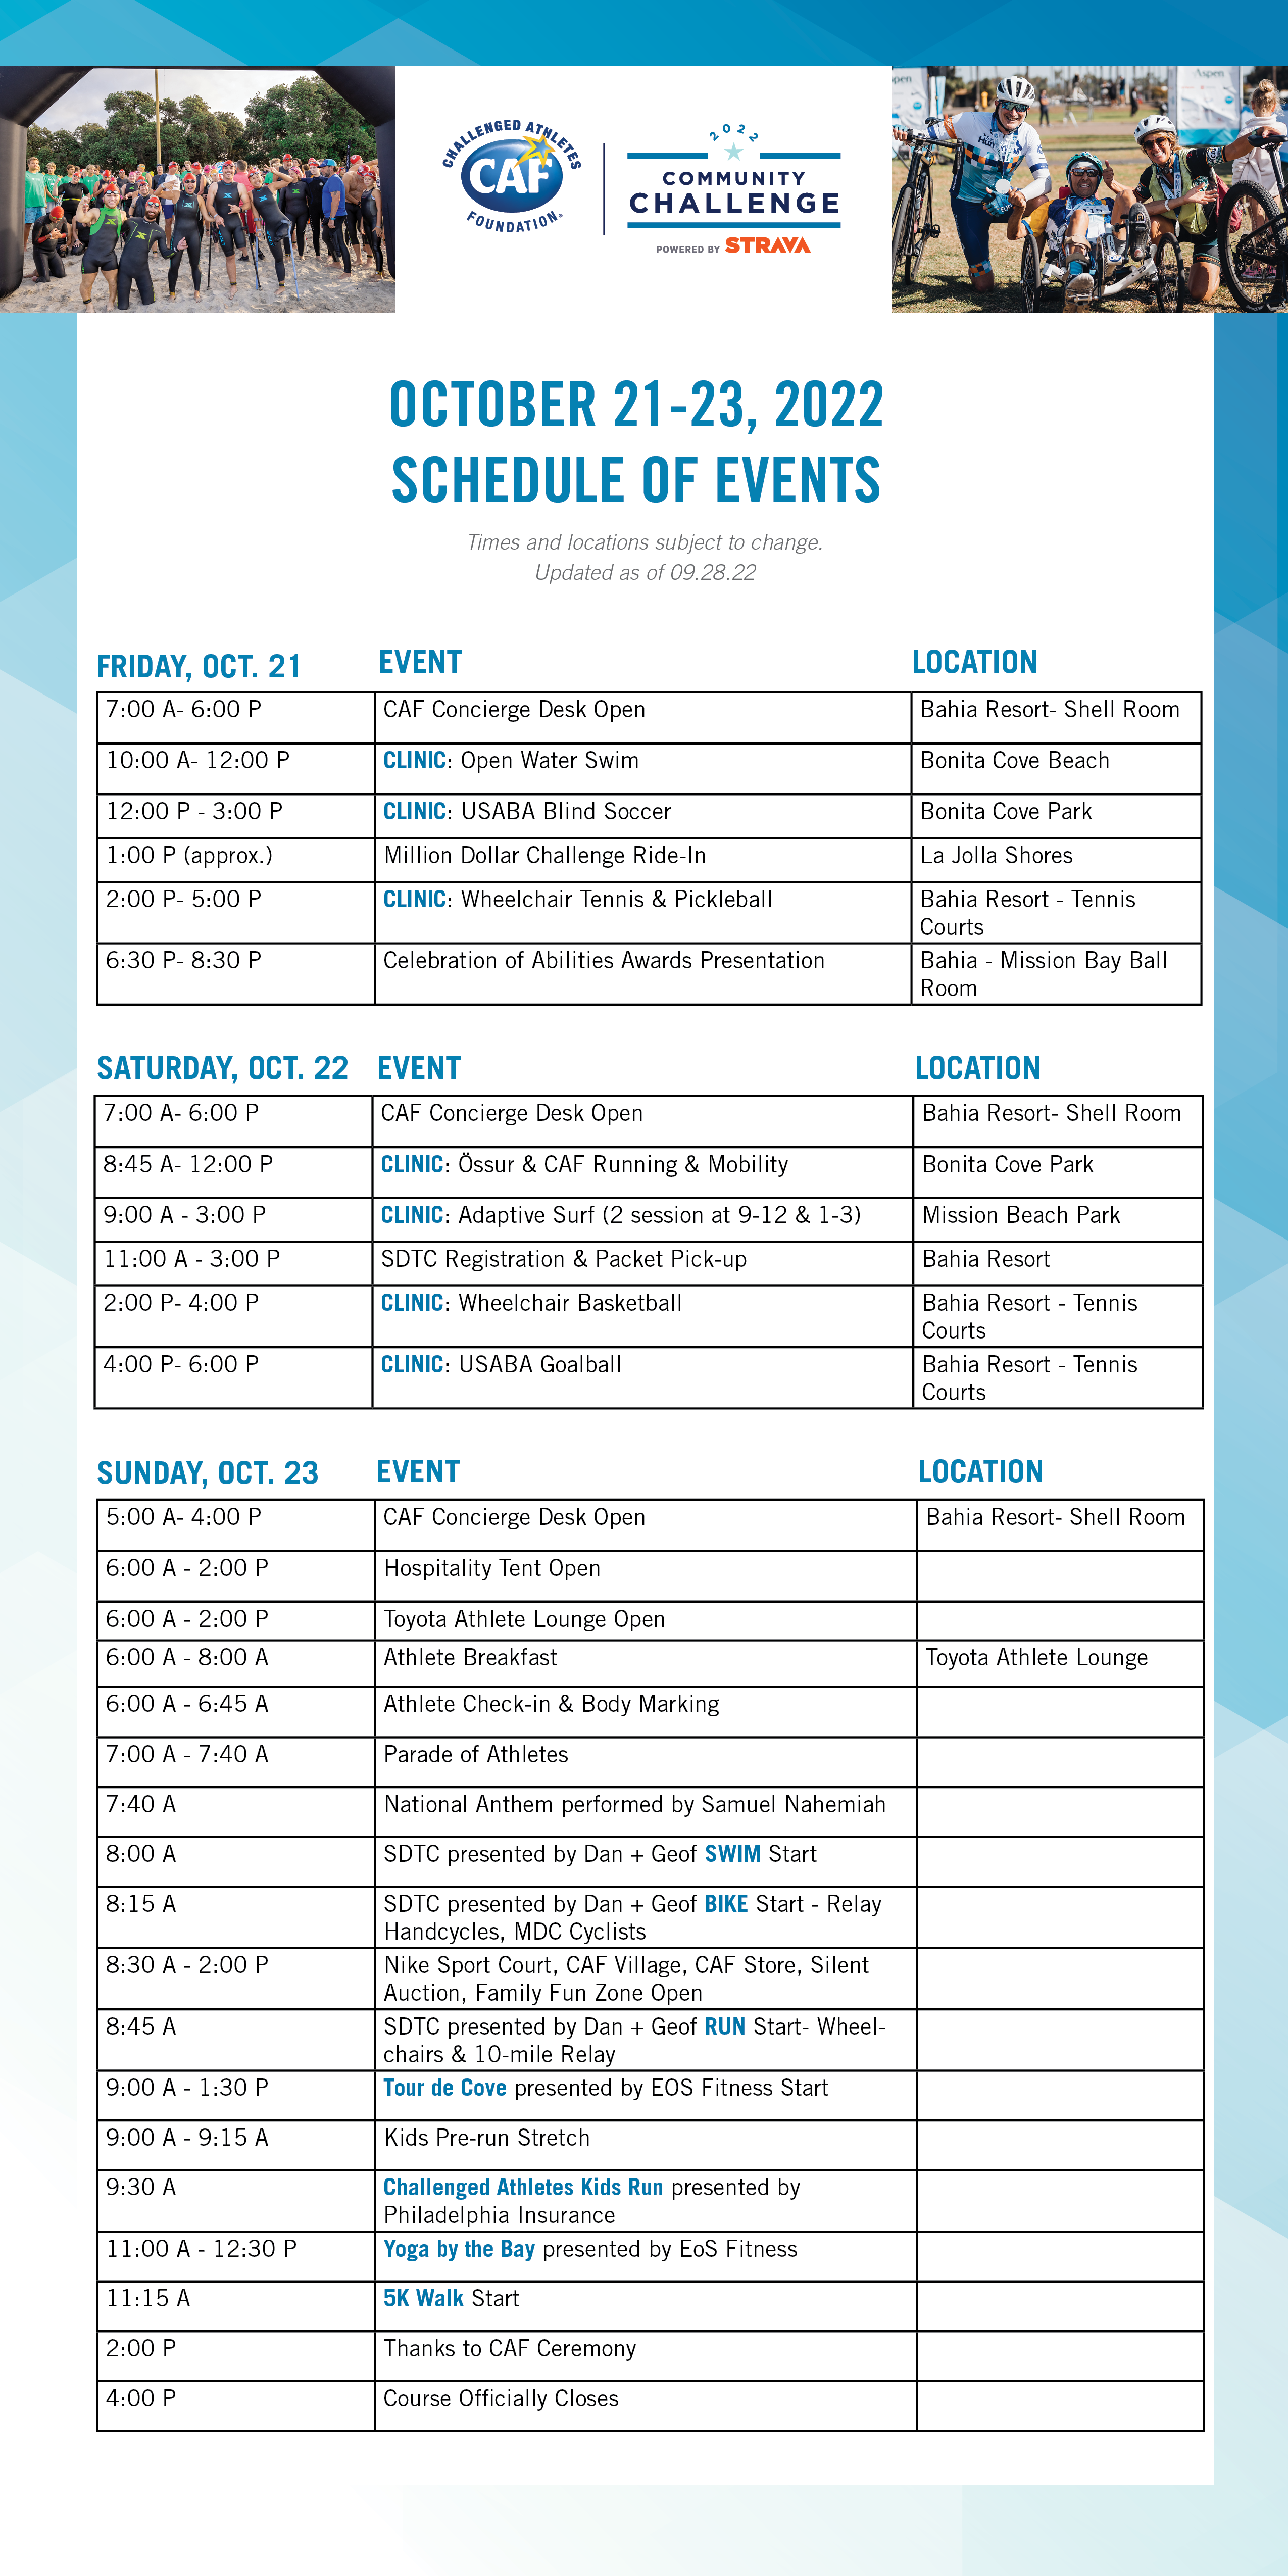 Community Challenge Weekend Schedule of Events